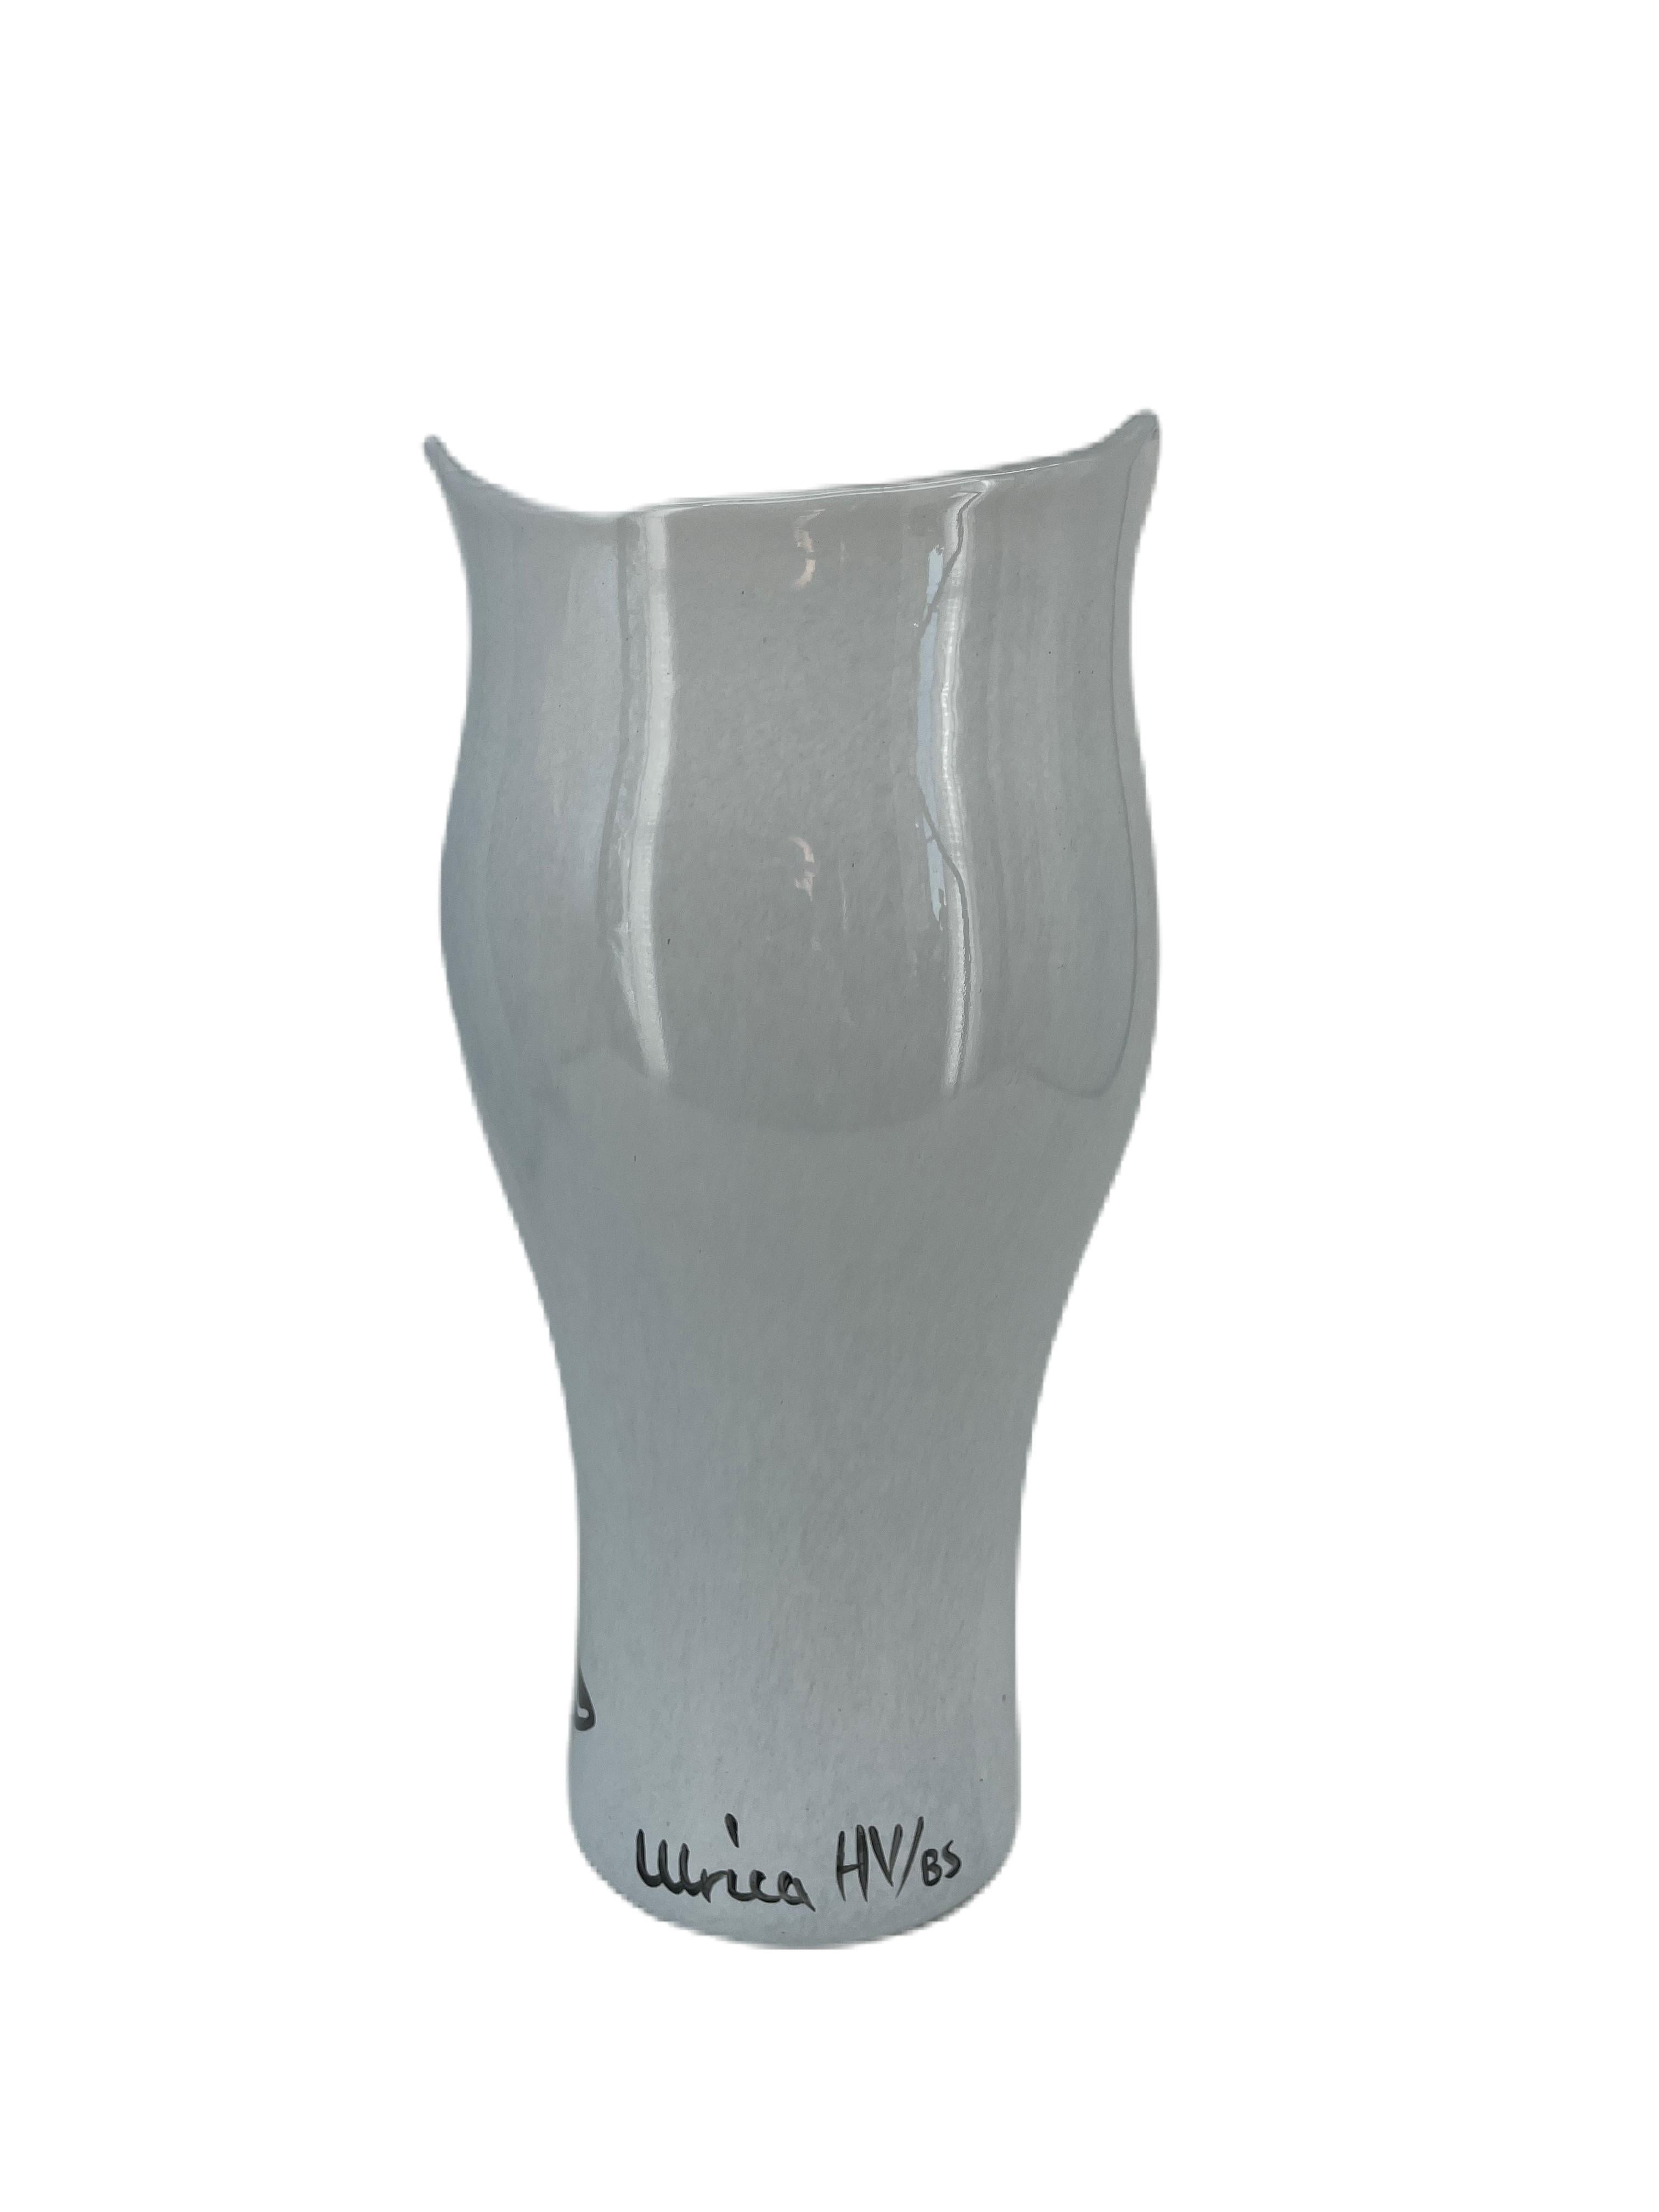 Vase en verre Ulrica Hydman Vallien avec forme de tête, verre blanc et caractéristiques stylistiques. Il est soufflé à la bouche et décoré à la main, ce qui lui donne un aspect unique. Ulrica a conçu ce vase dans les années 2000 dans le cadre de la